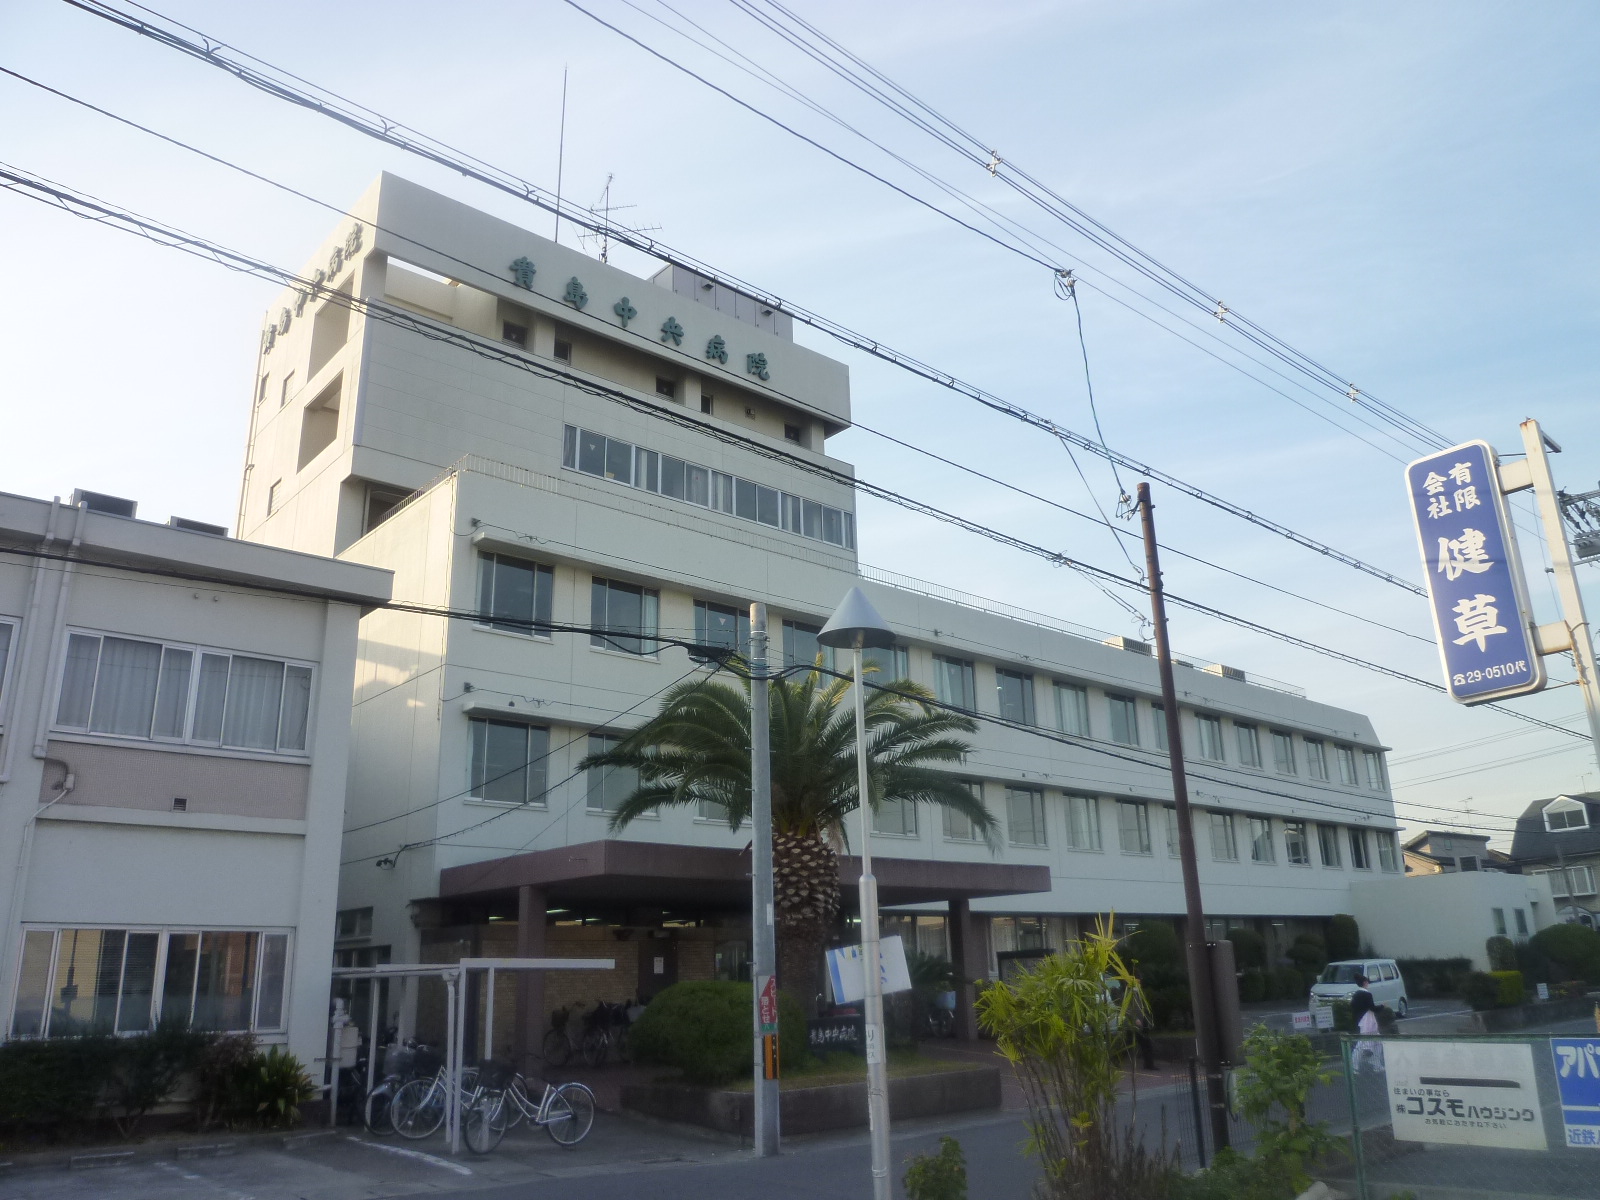 Hospital. 417m until the medical corporation Takashi Medical Association Kijima Central Hospital (Hospital)